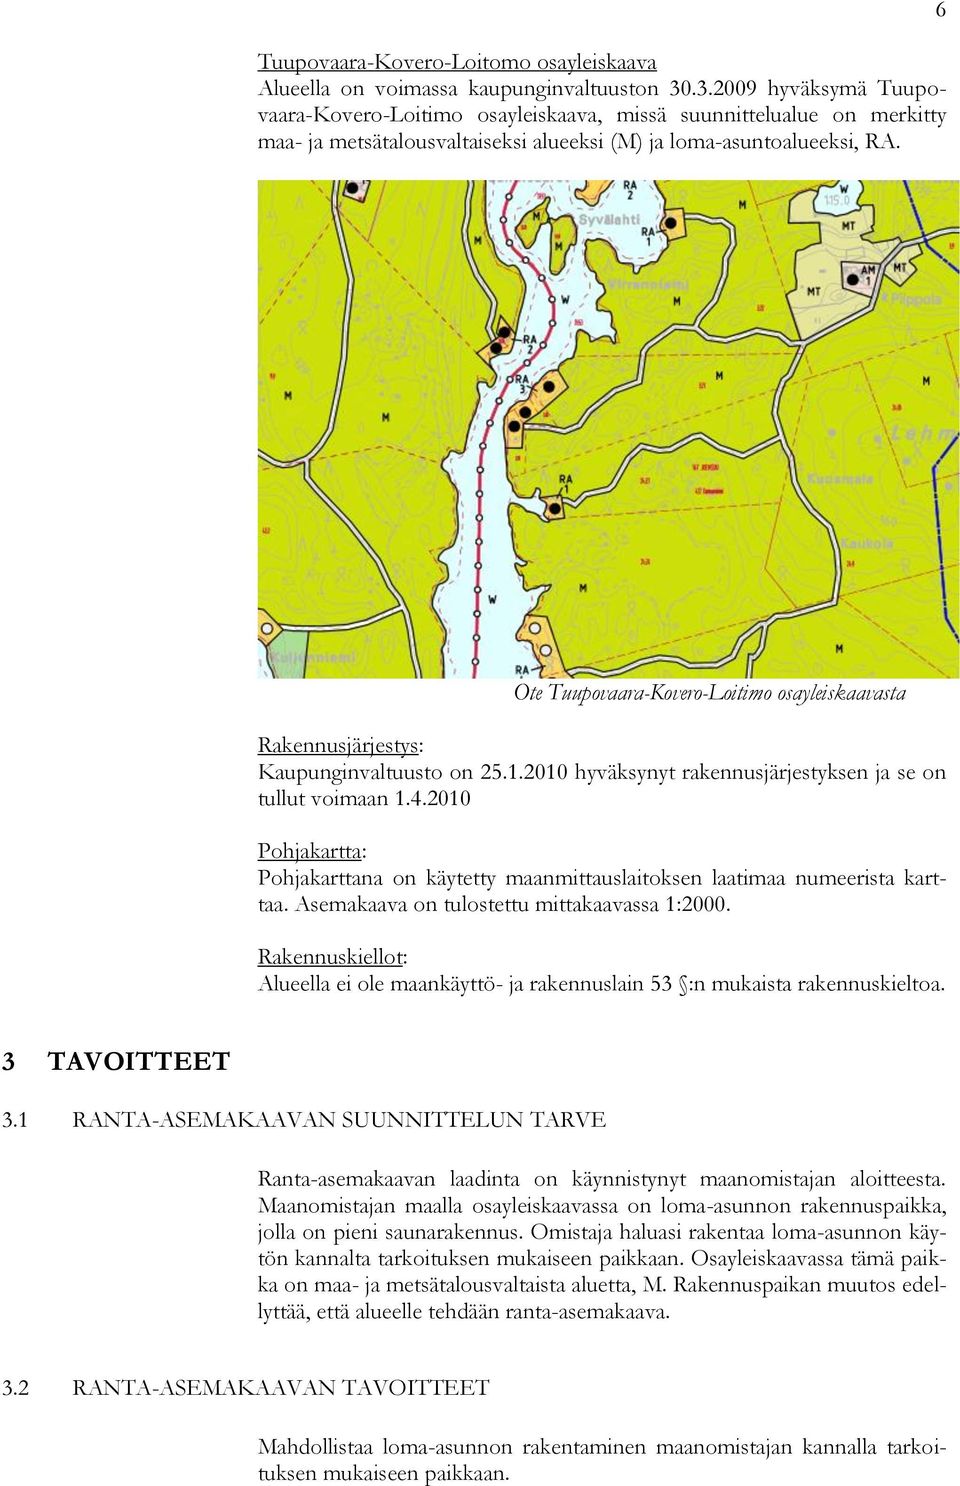 6 Ote Tuupovaara-Kovero-Loitimo osayleiskaavasta Rakennusjärjestys: Kaupunginvaltuusto on 25.1.2010 hyväksynyt rakennusjärjestyksen ja se on tullut voimaan 1.4.